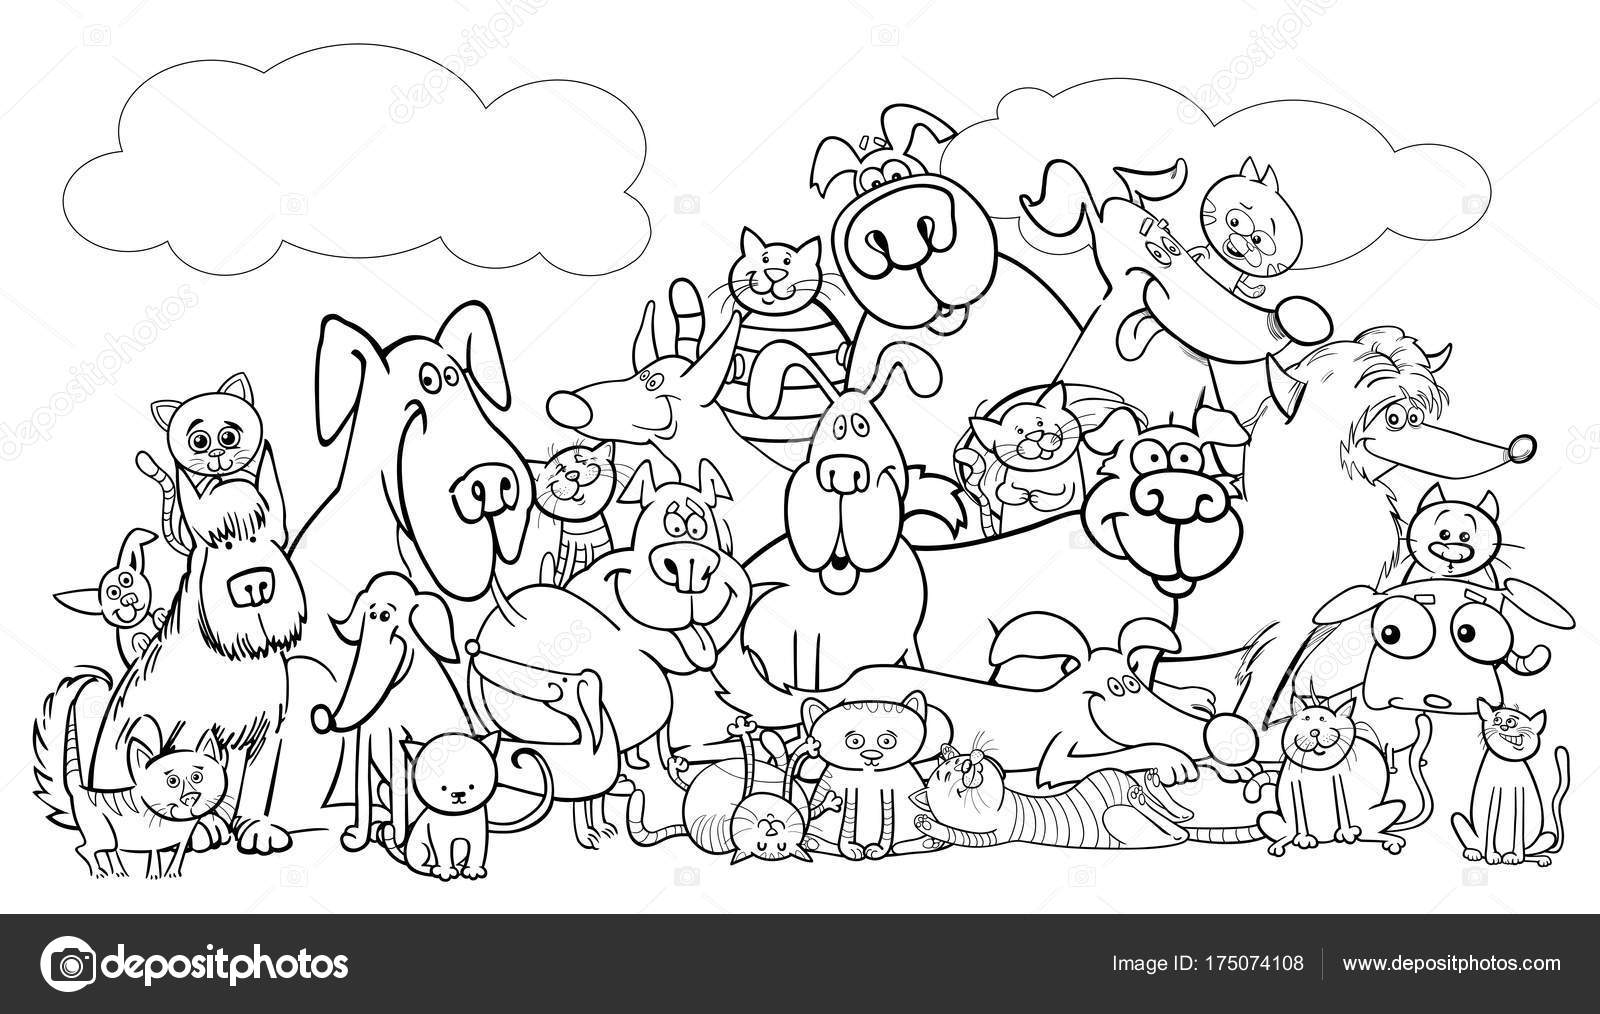 Desenho em preto e branco de um grupo de gatos para colorir e